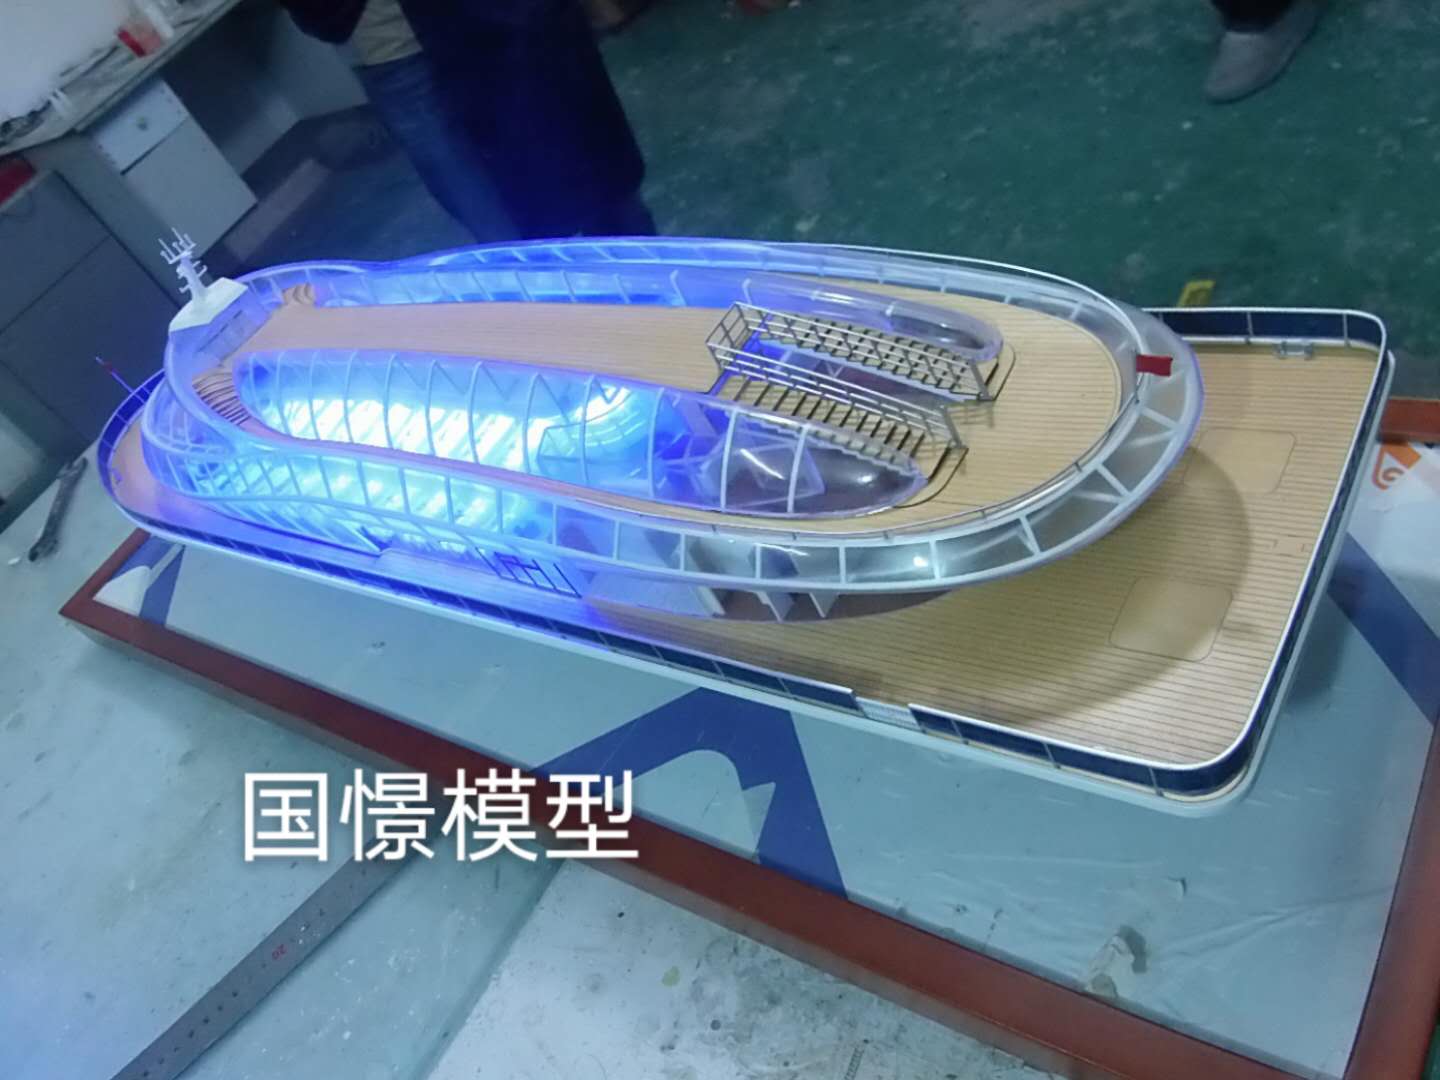 唐县船舶模型